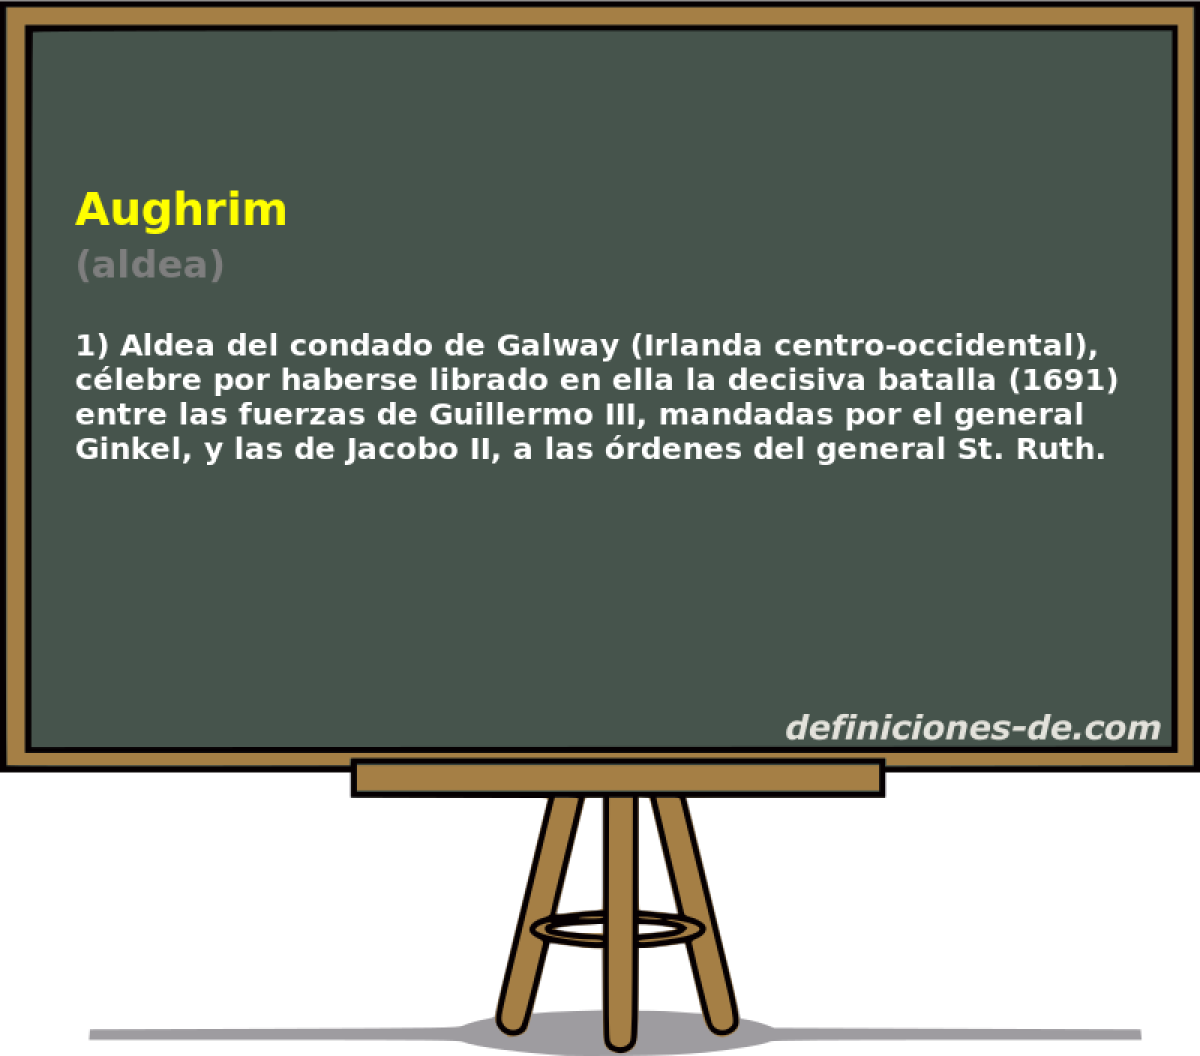 Aughrim (aldea)